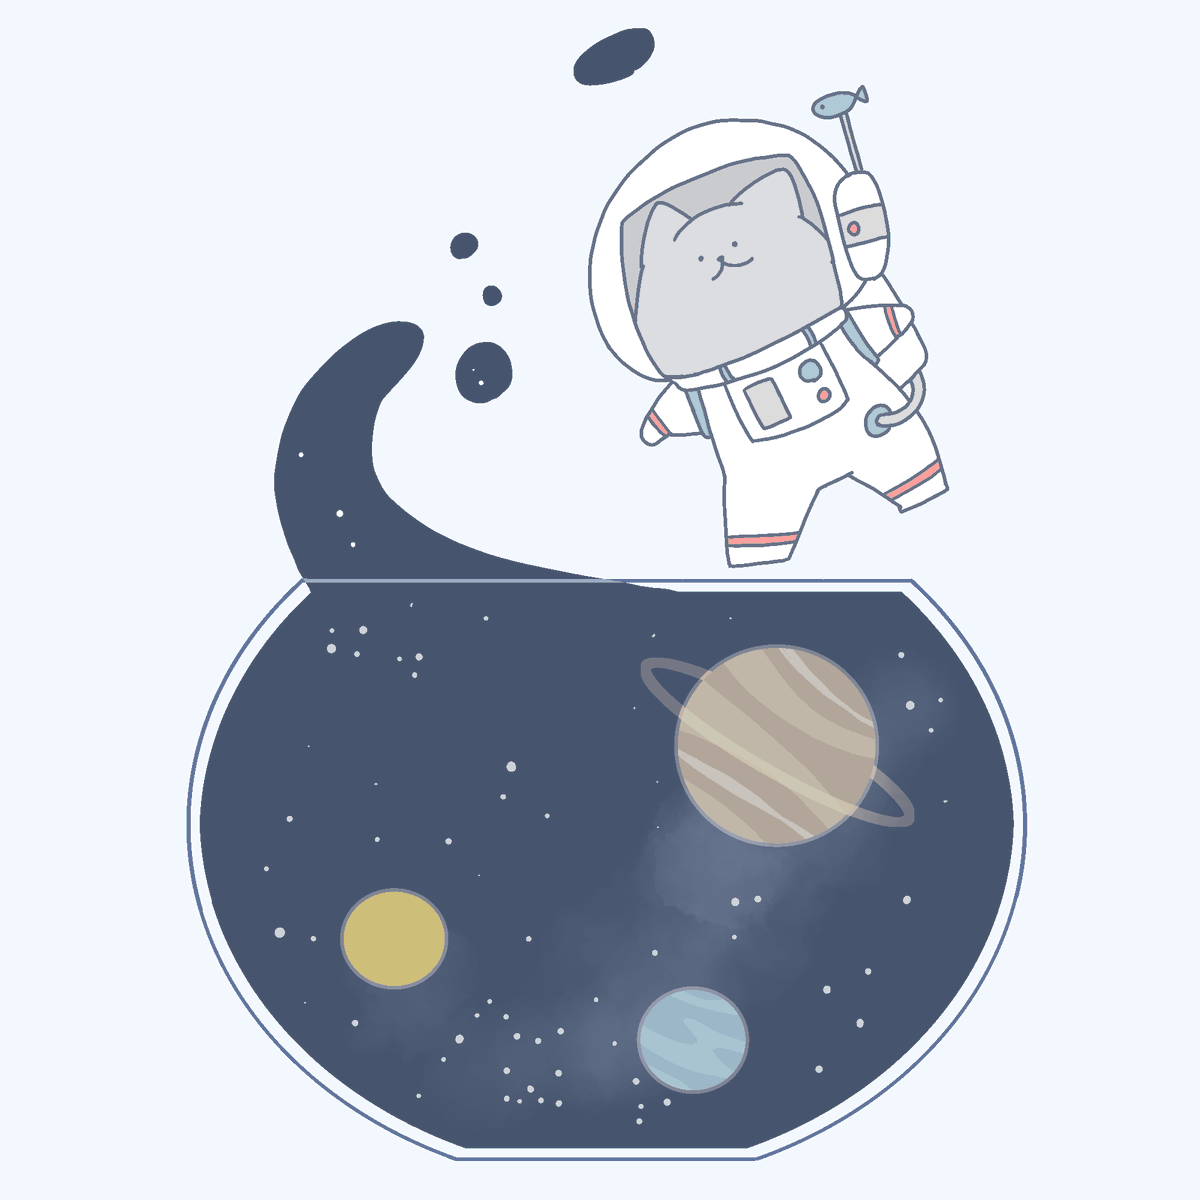 space astronaut cat spacesuit planet space helmet no humans  illustration images